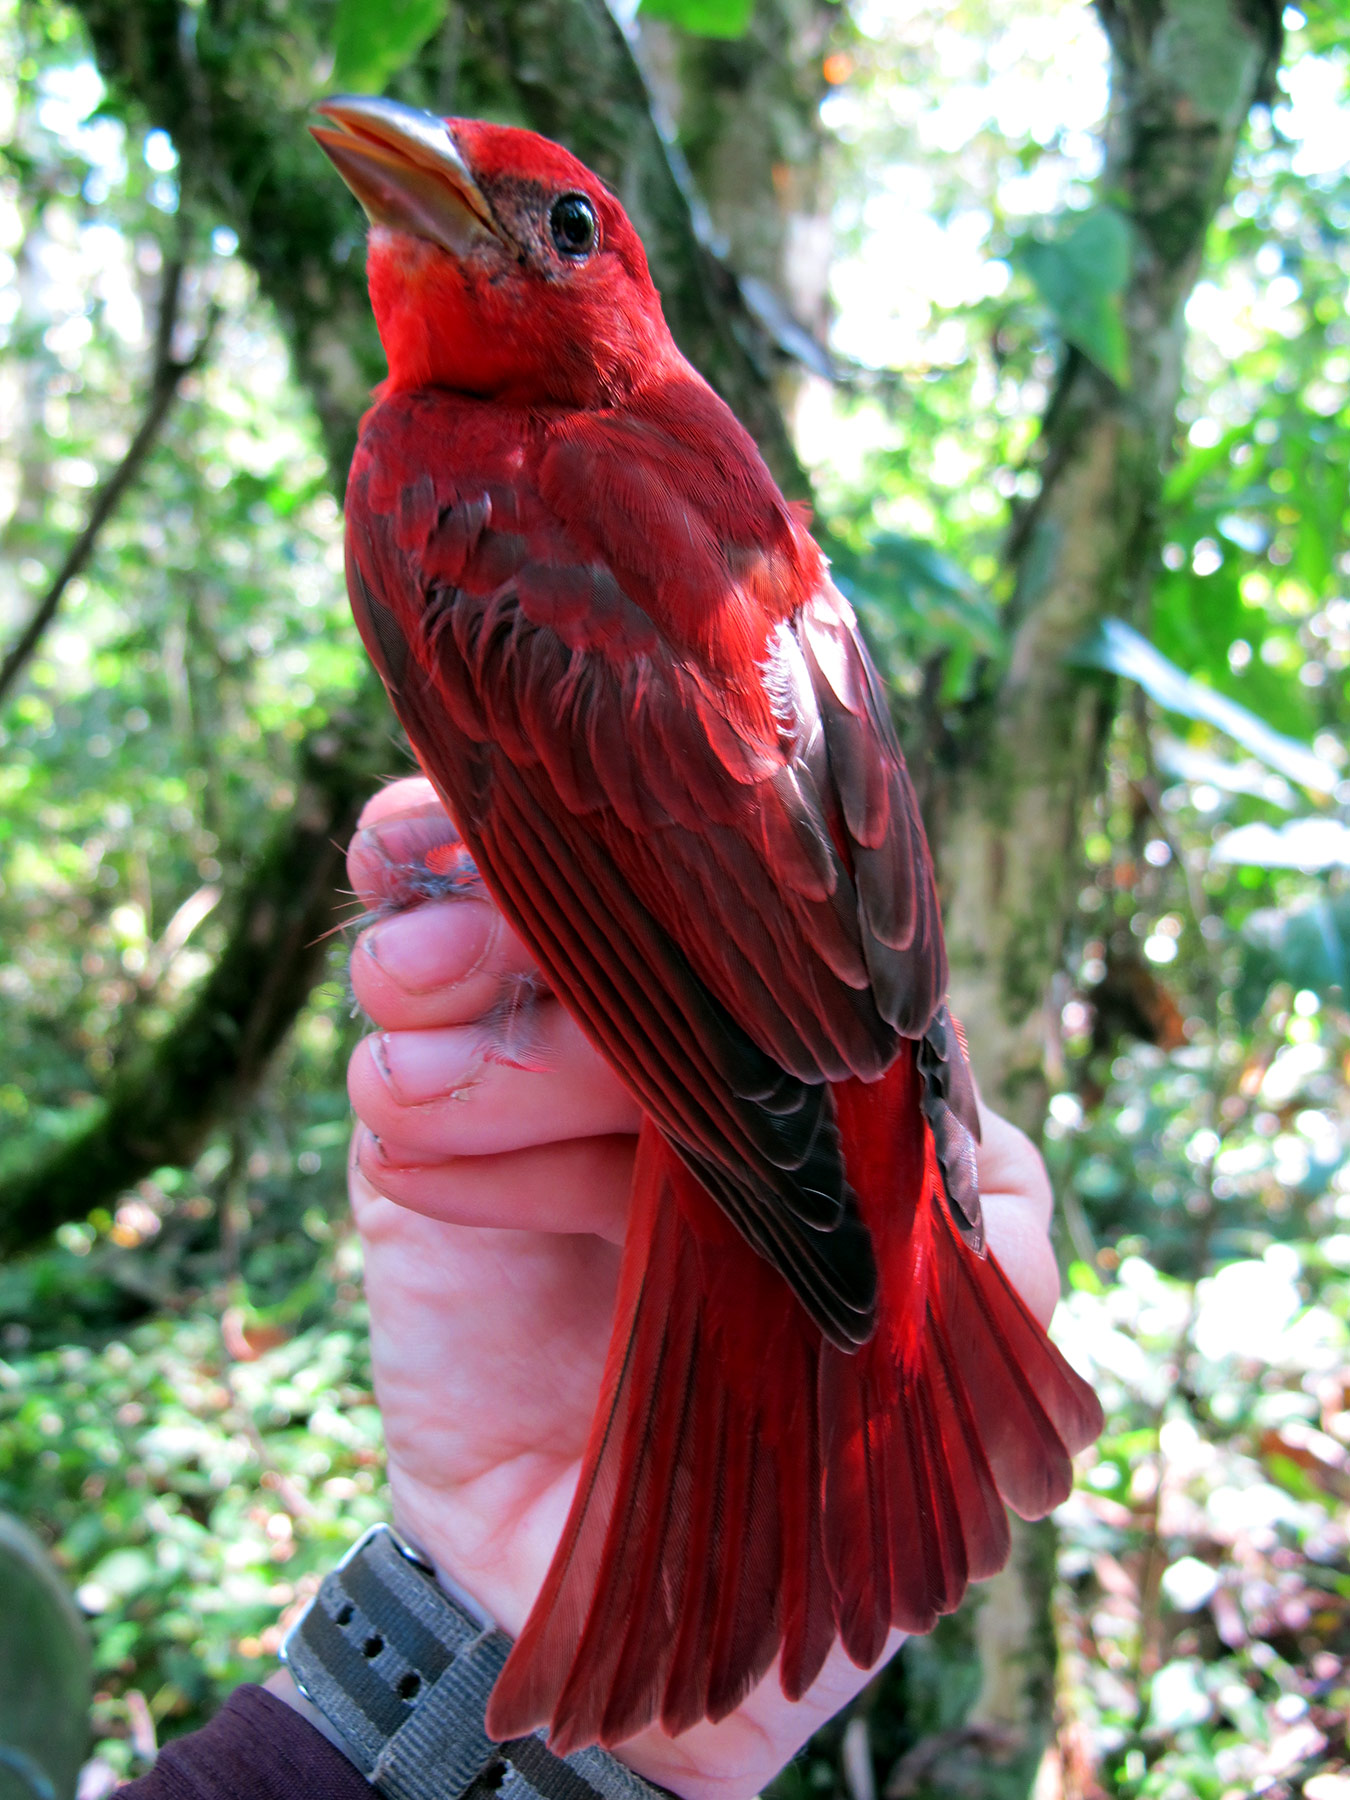 A hand holding a red bird